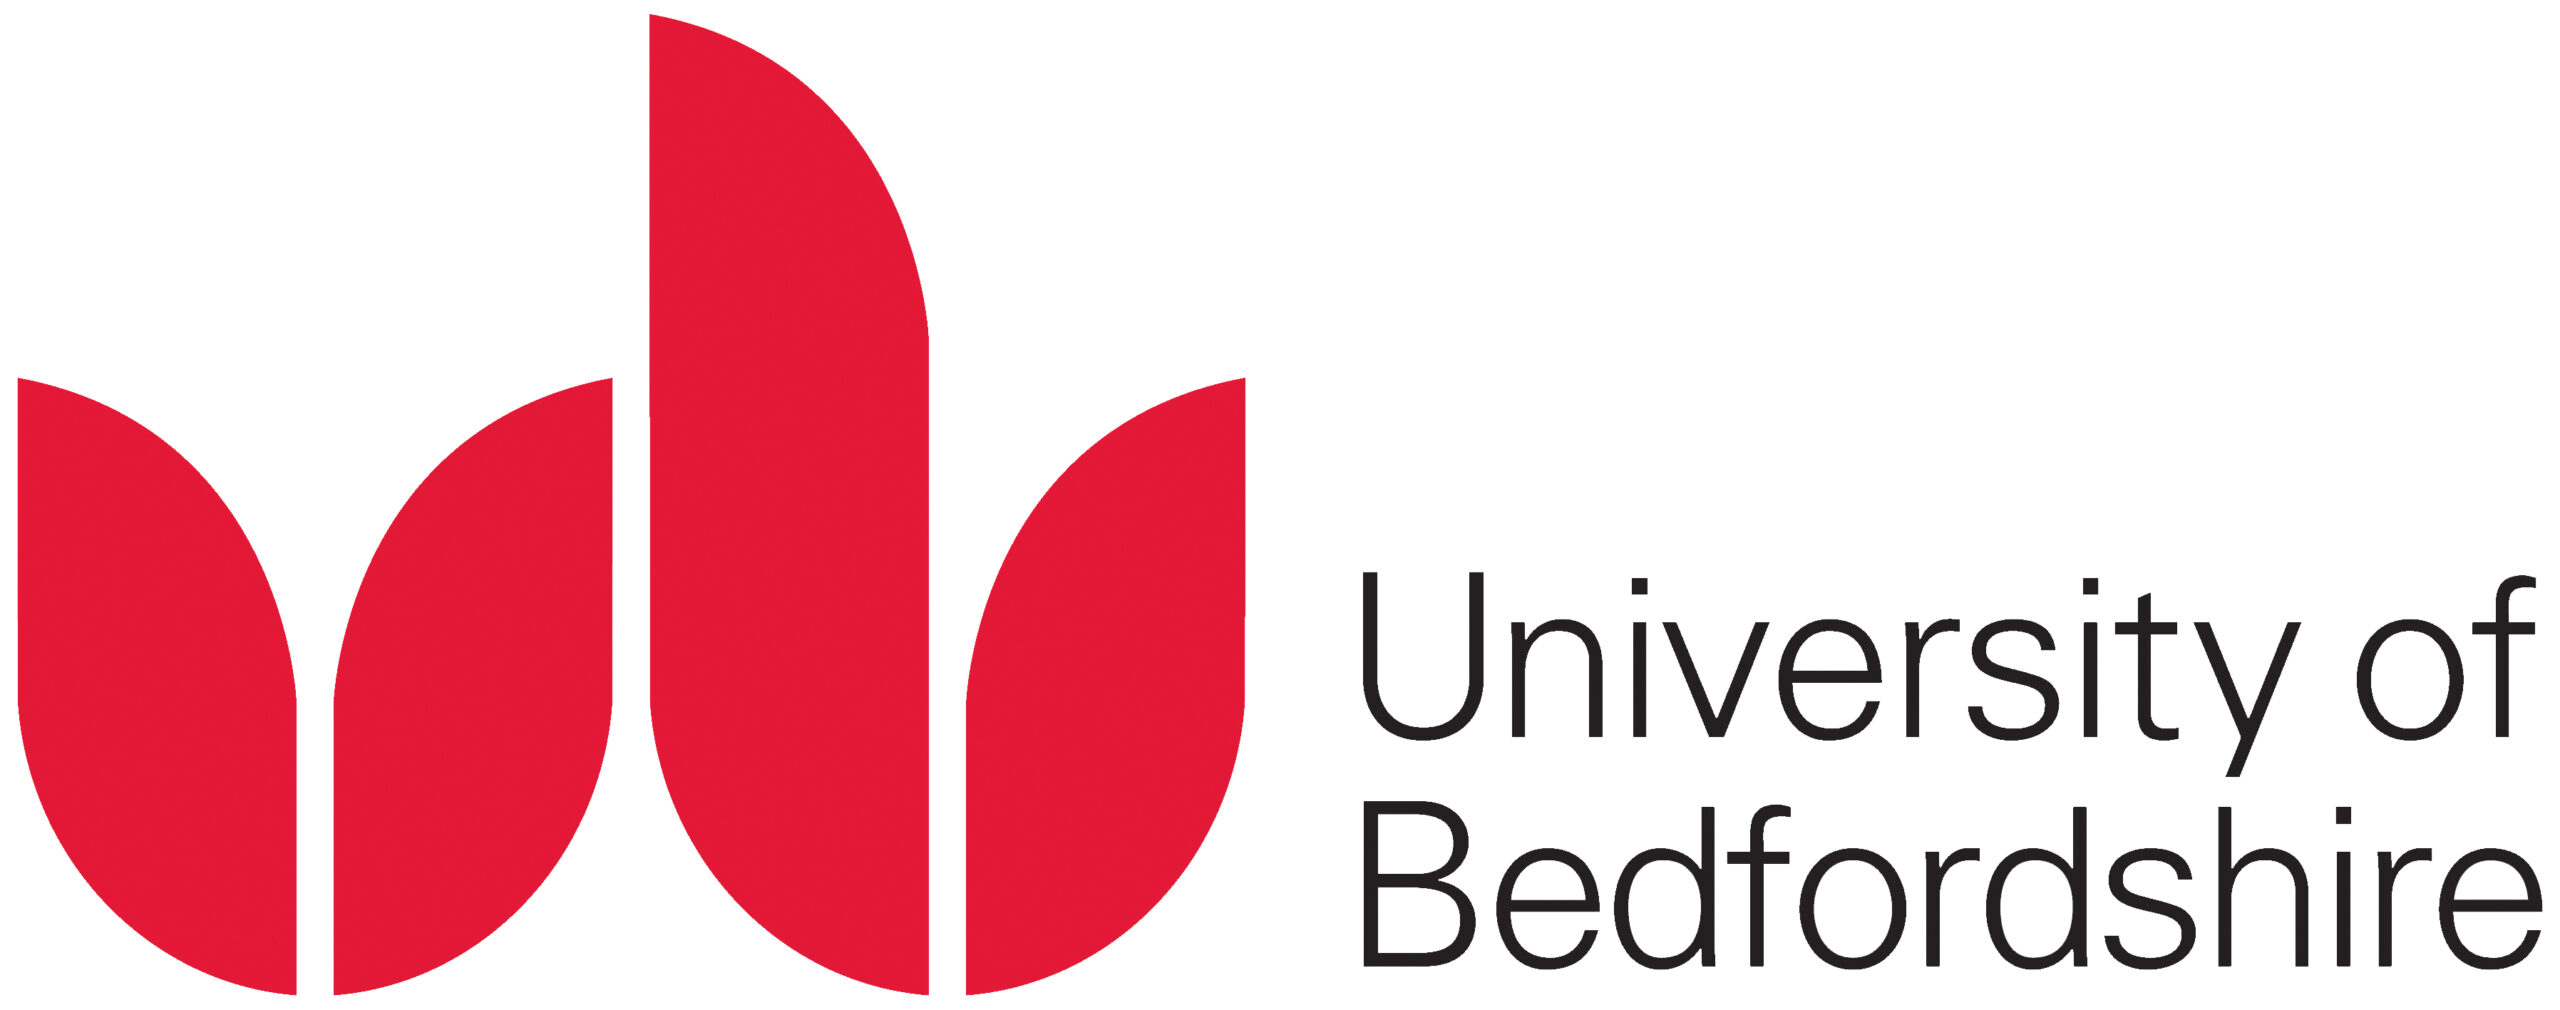 University of Bedfordshire logo - JPEG